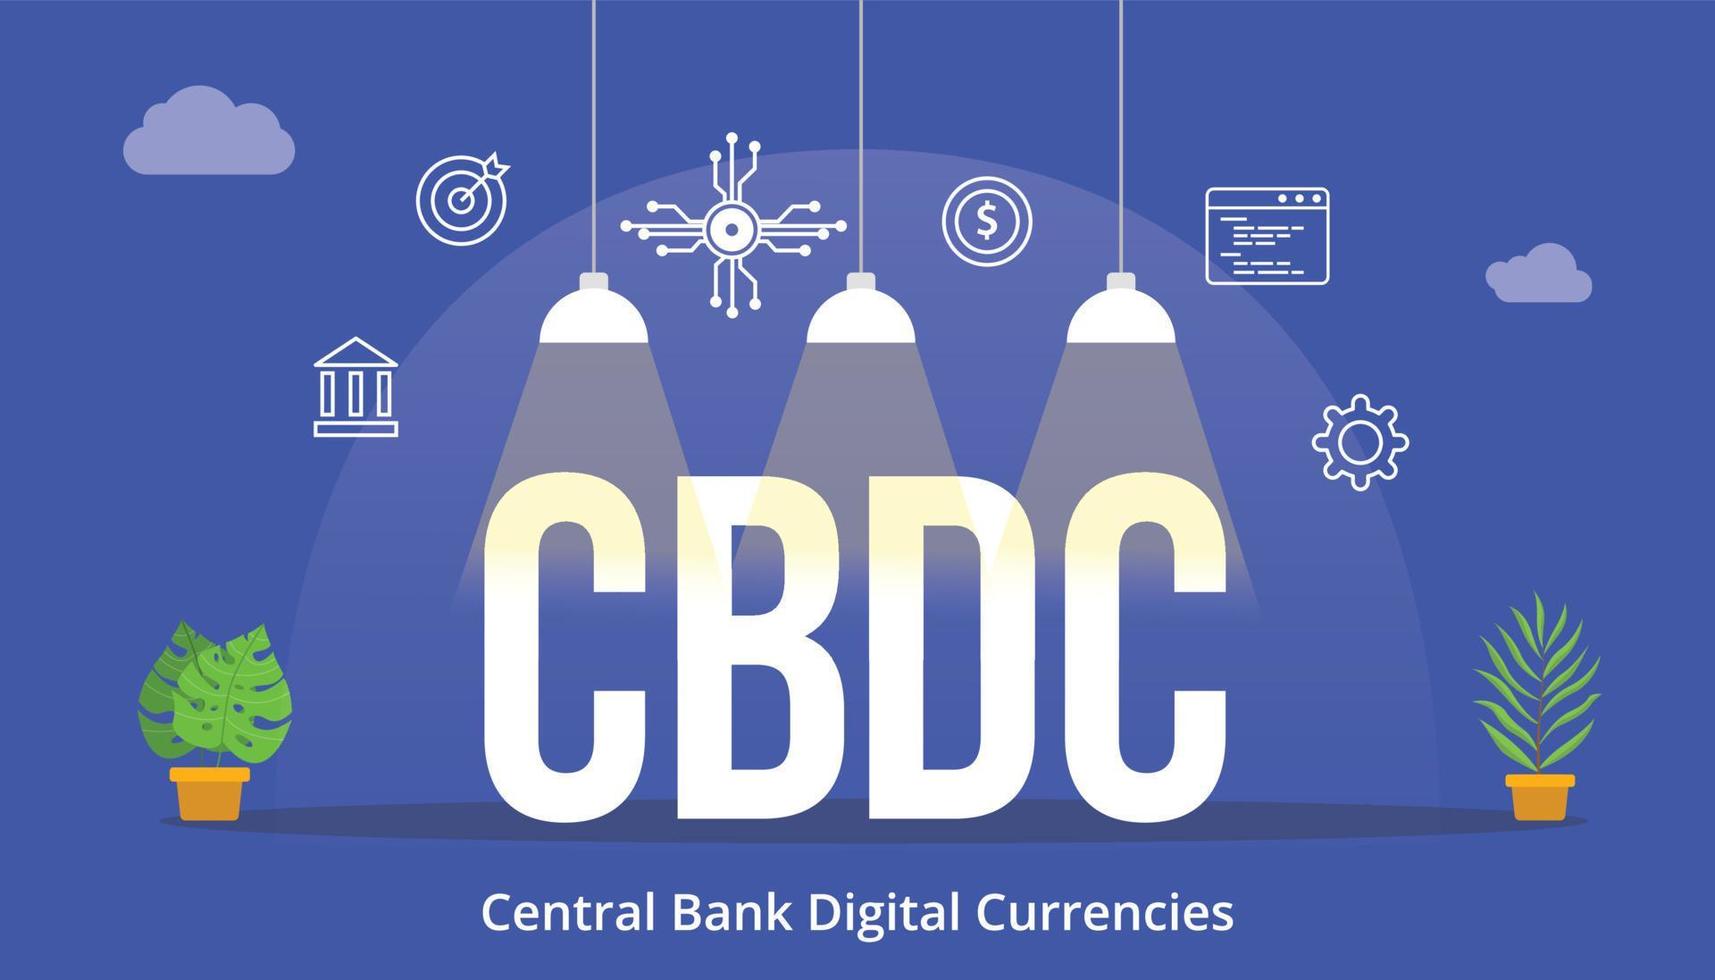 digitales währungskonzept der cbdc-zentralbank mit symbol und großem worttext mit modernem flachem stil vektor